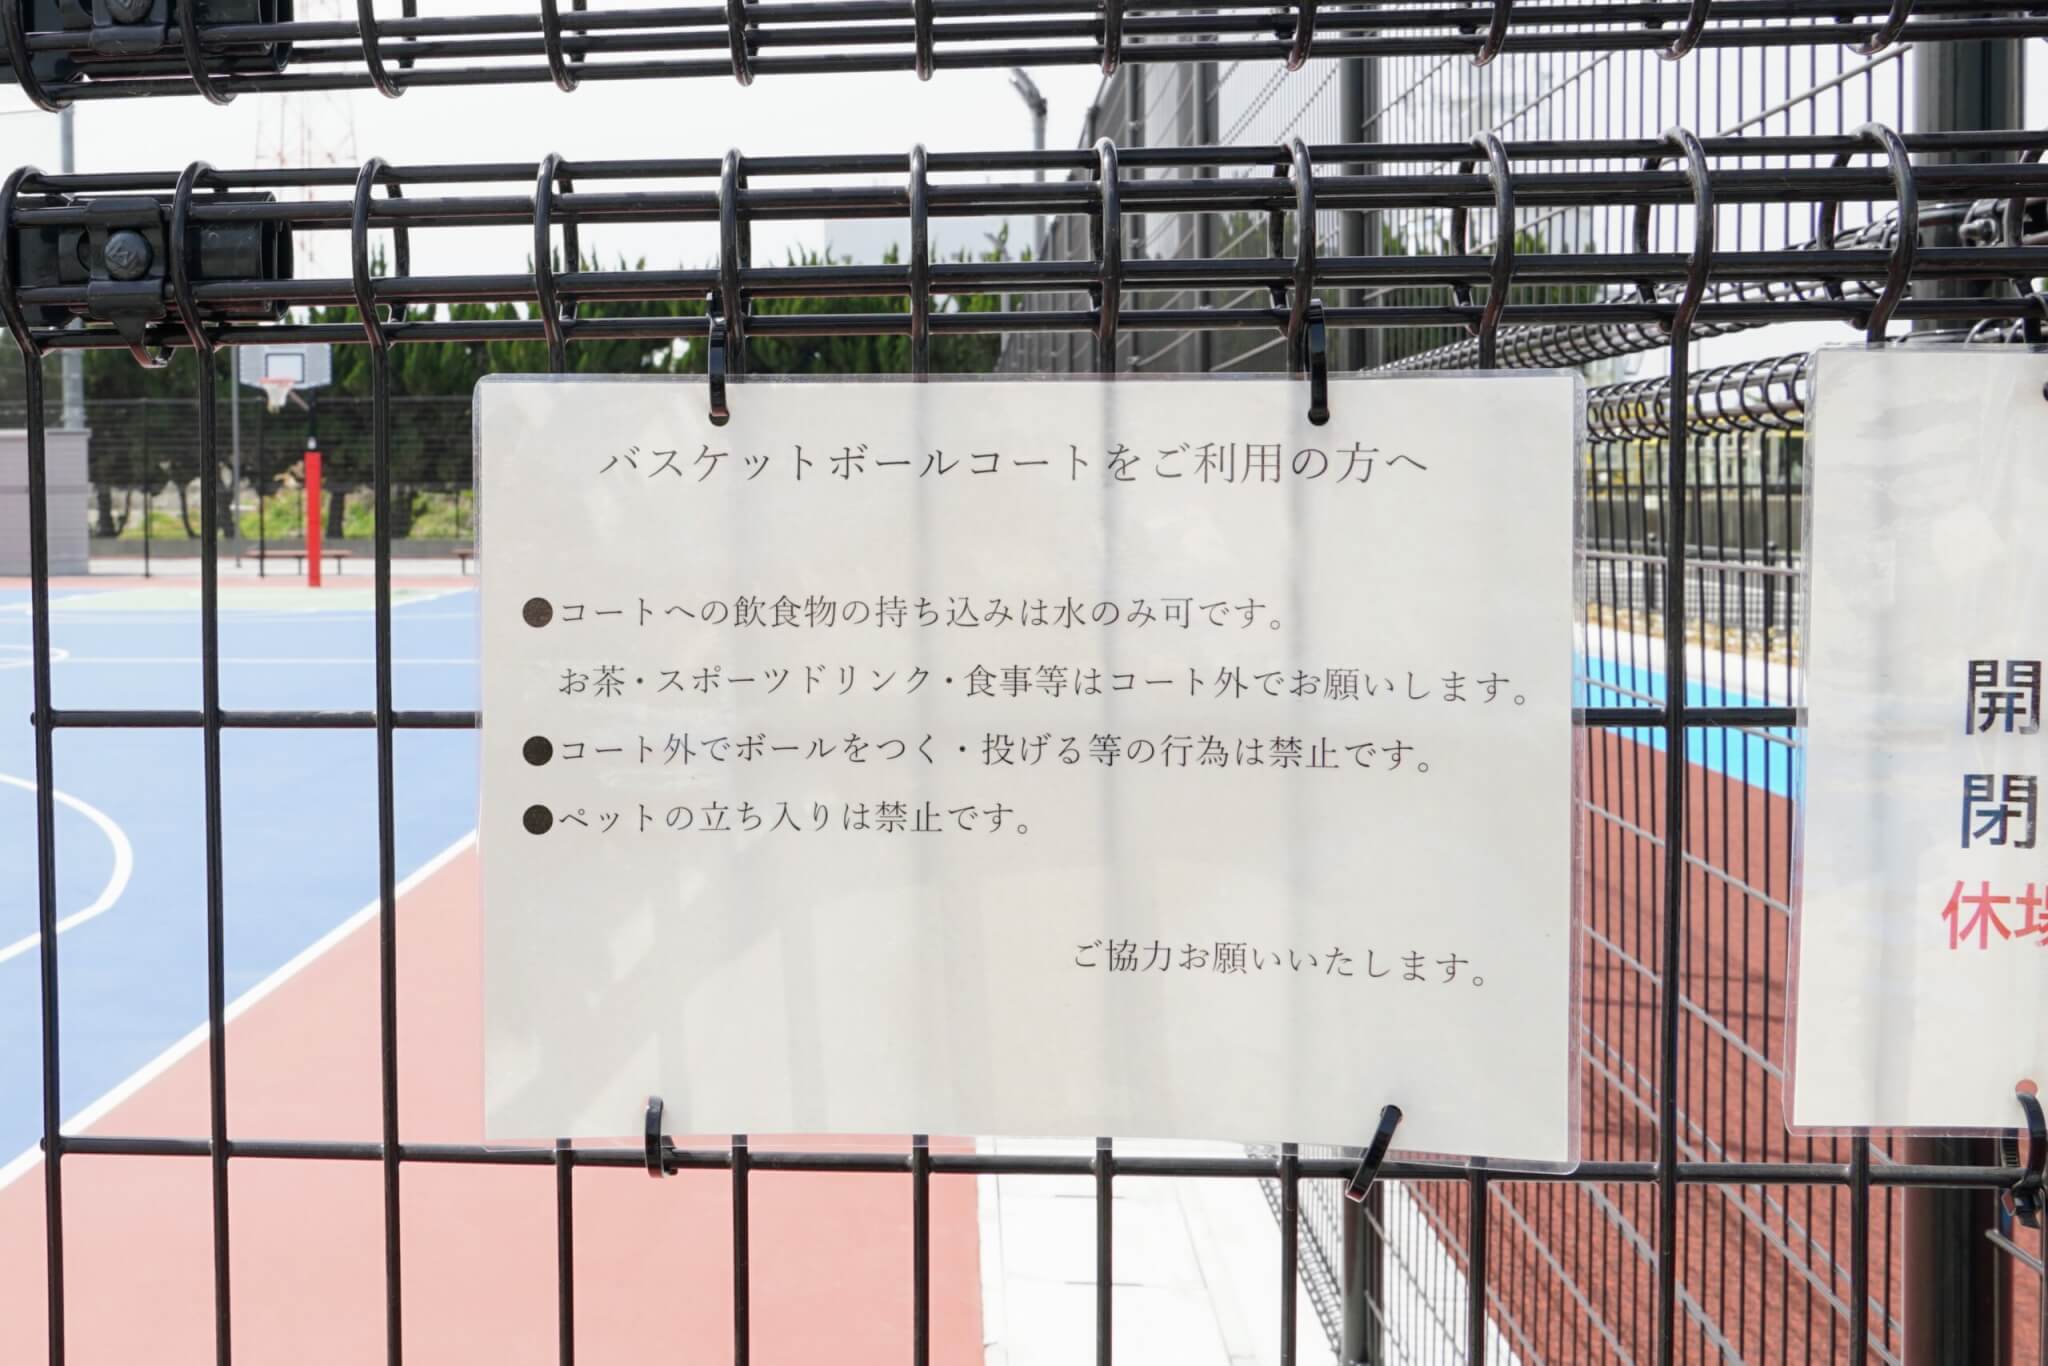 伊保スポーツ広場のバスケットボールコート注意事項